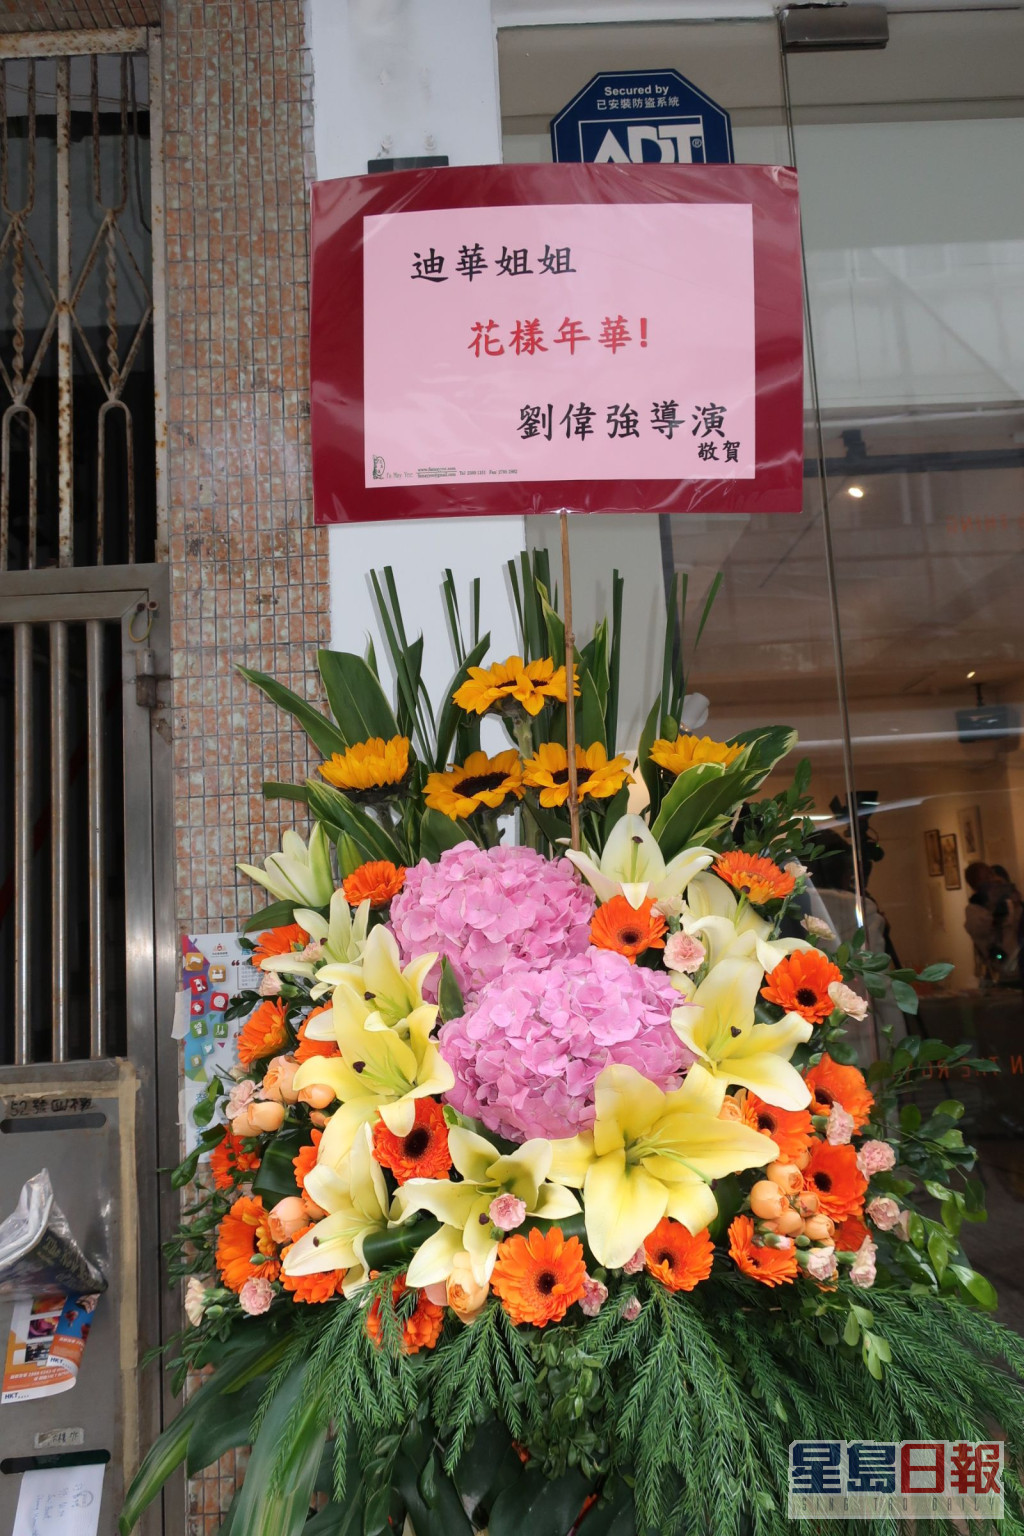 刘伟强导演送上花篮祝贺。